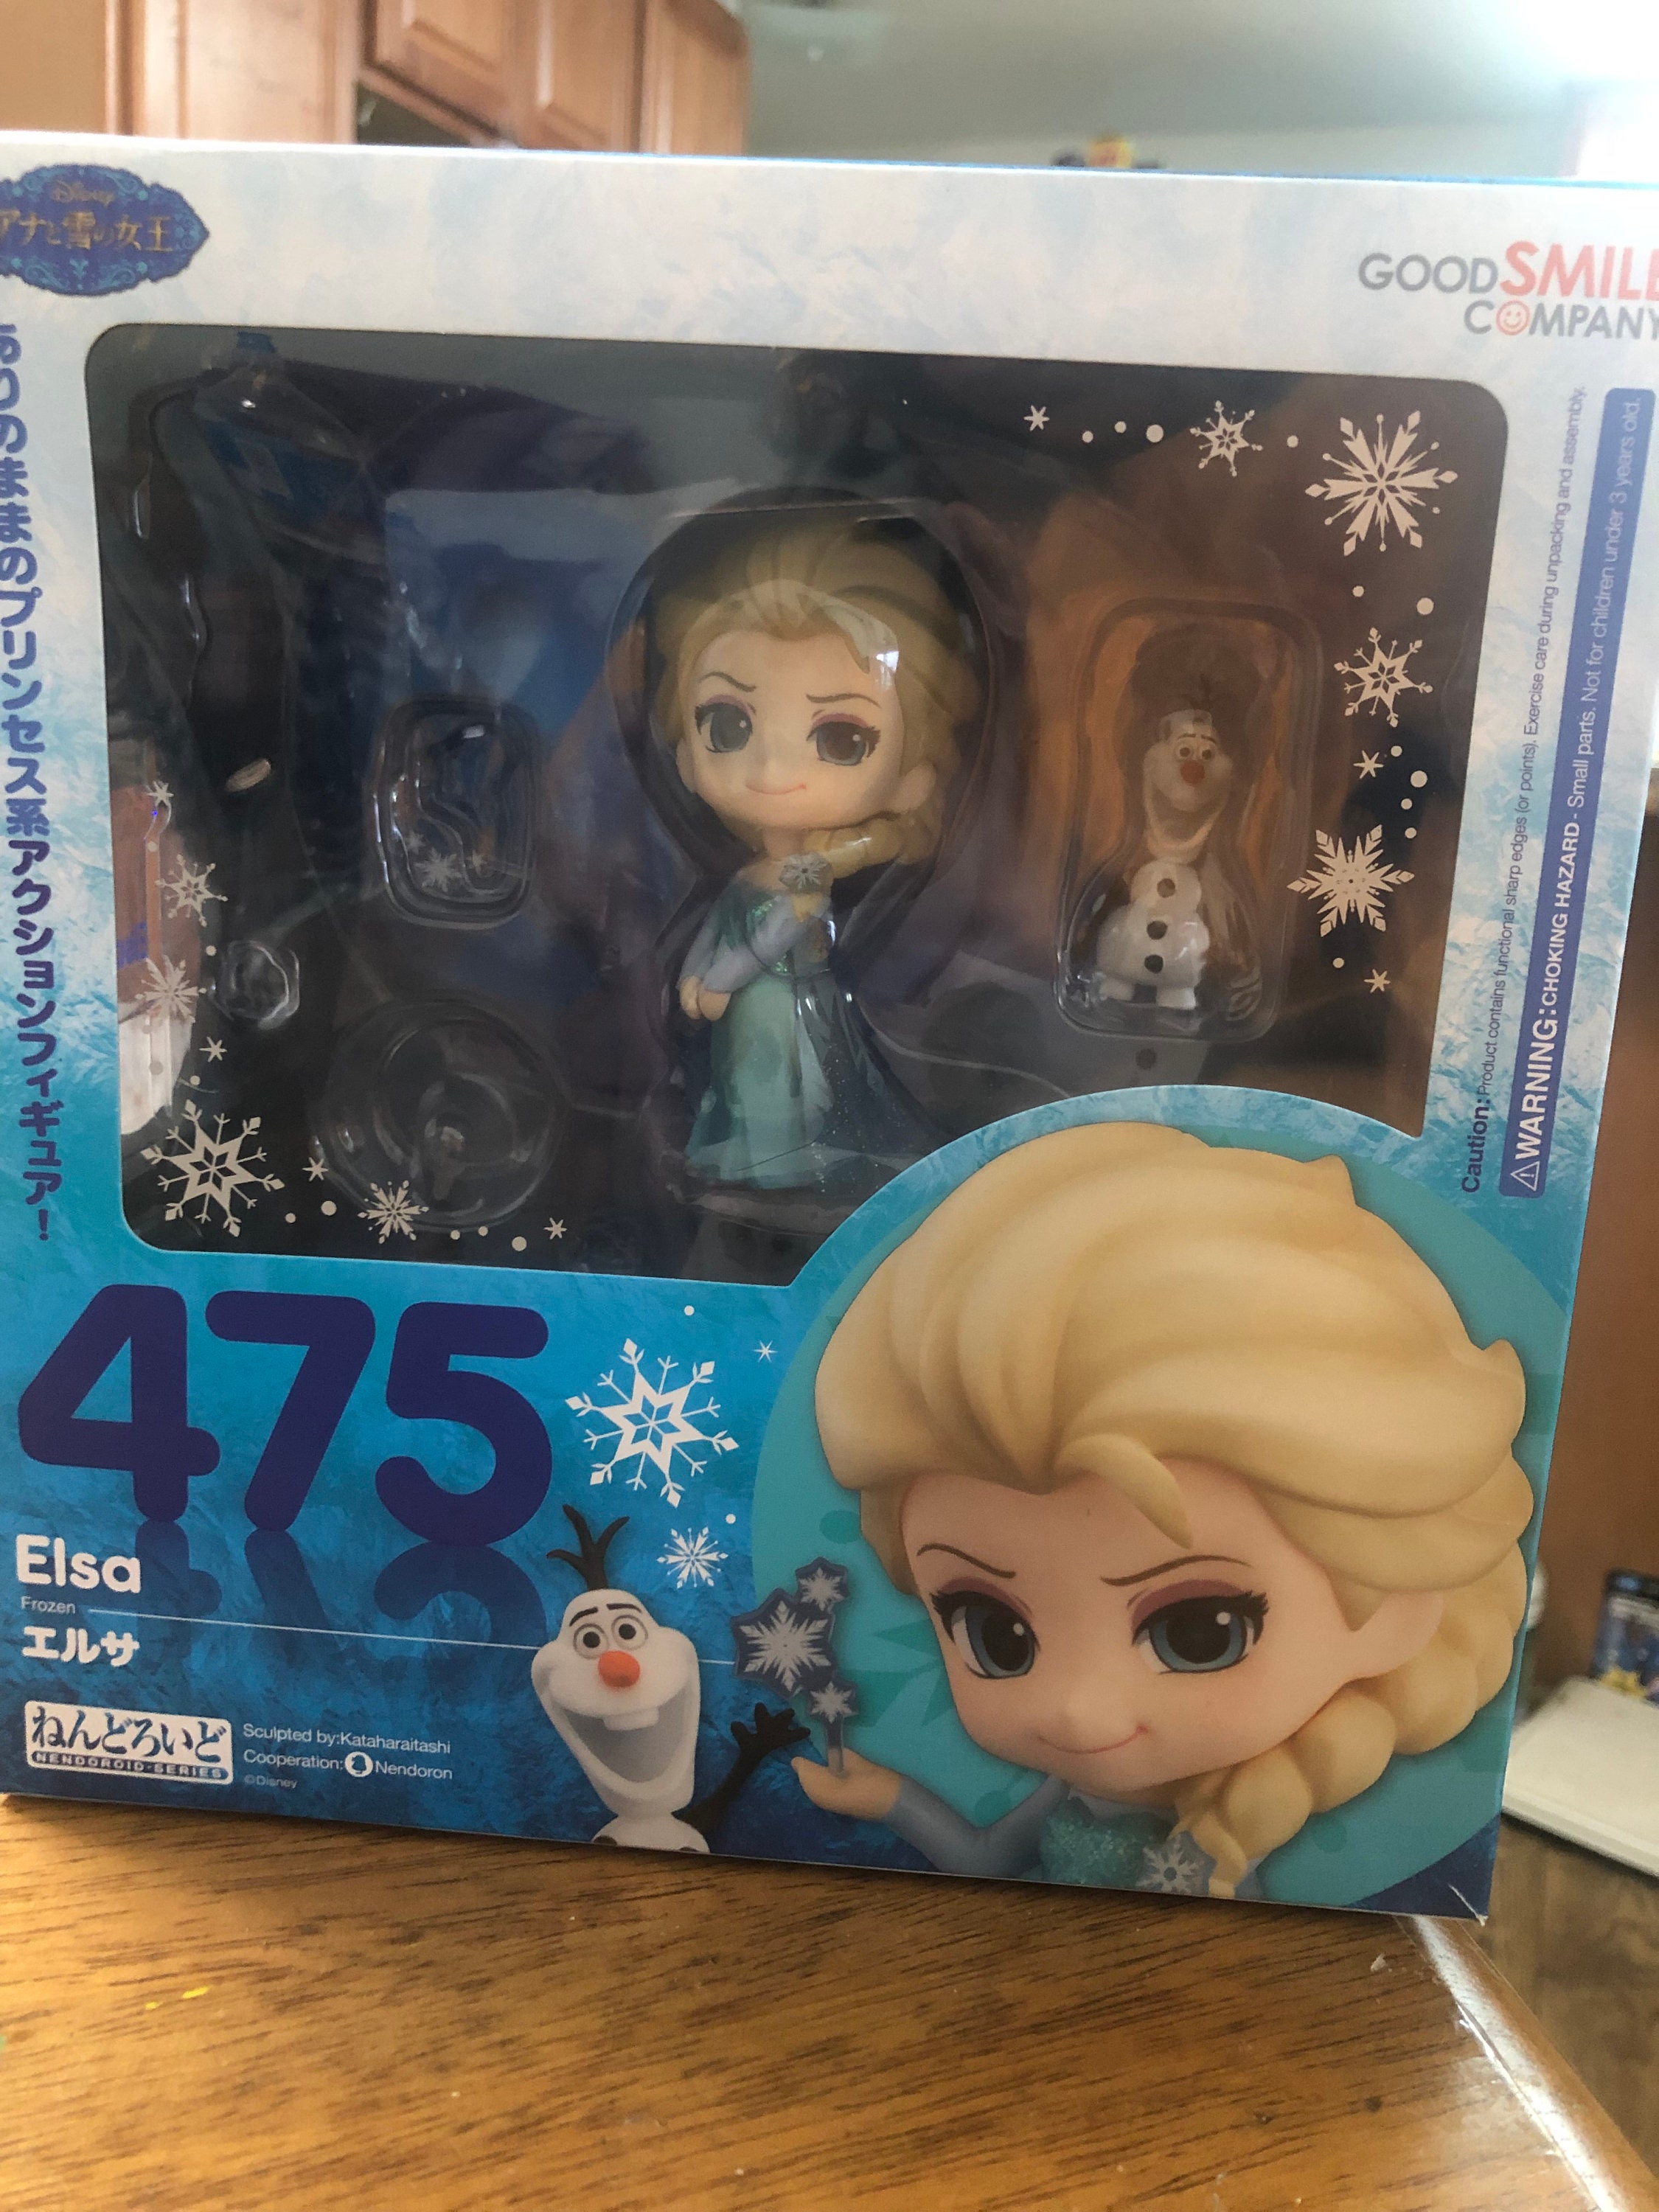 10cm No Box Anime Nendoroid Disney Princess Frozen Queen Elsa PVC Action Figure 